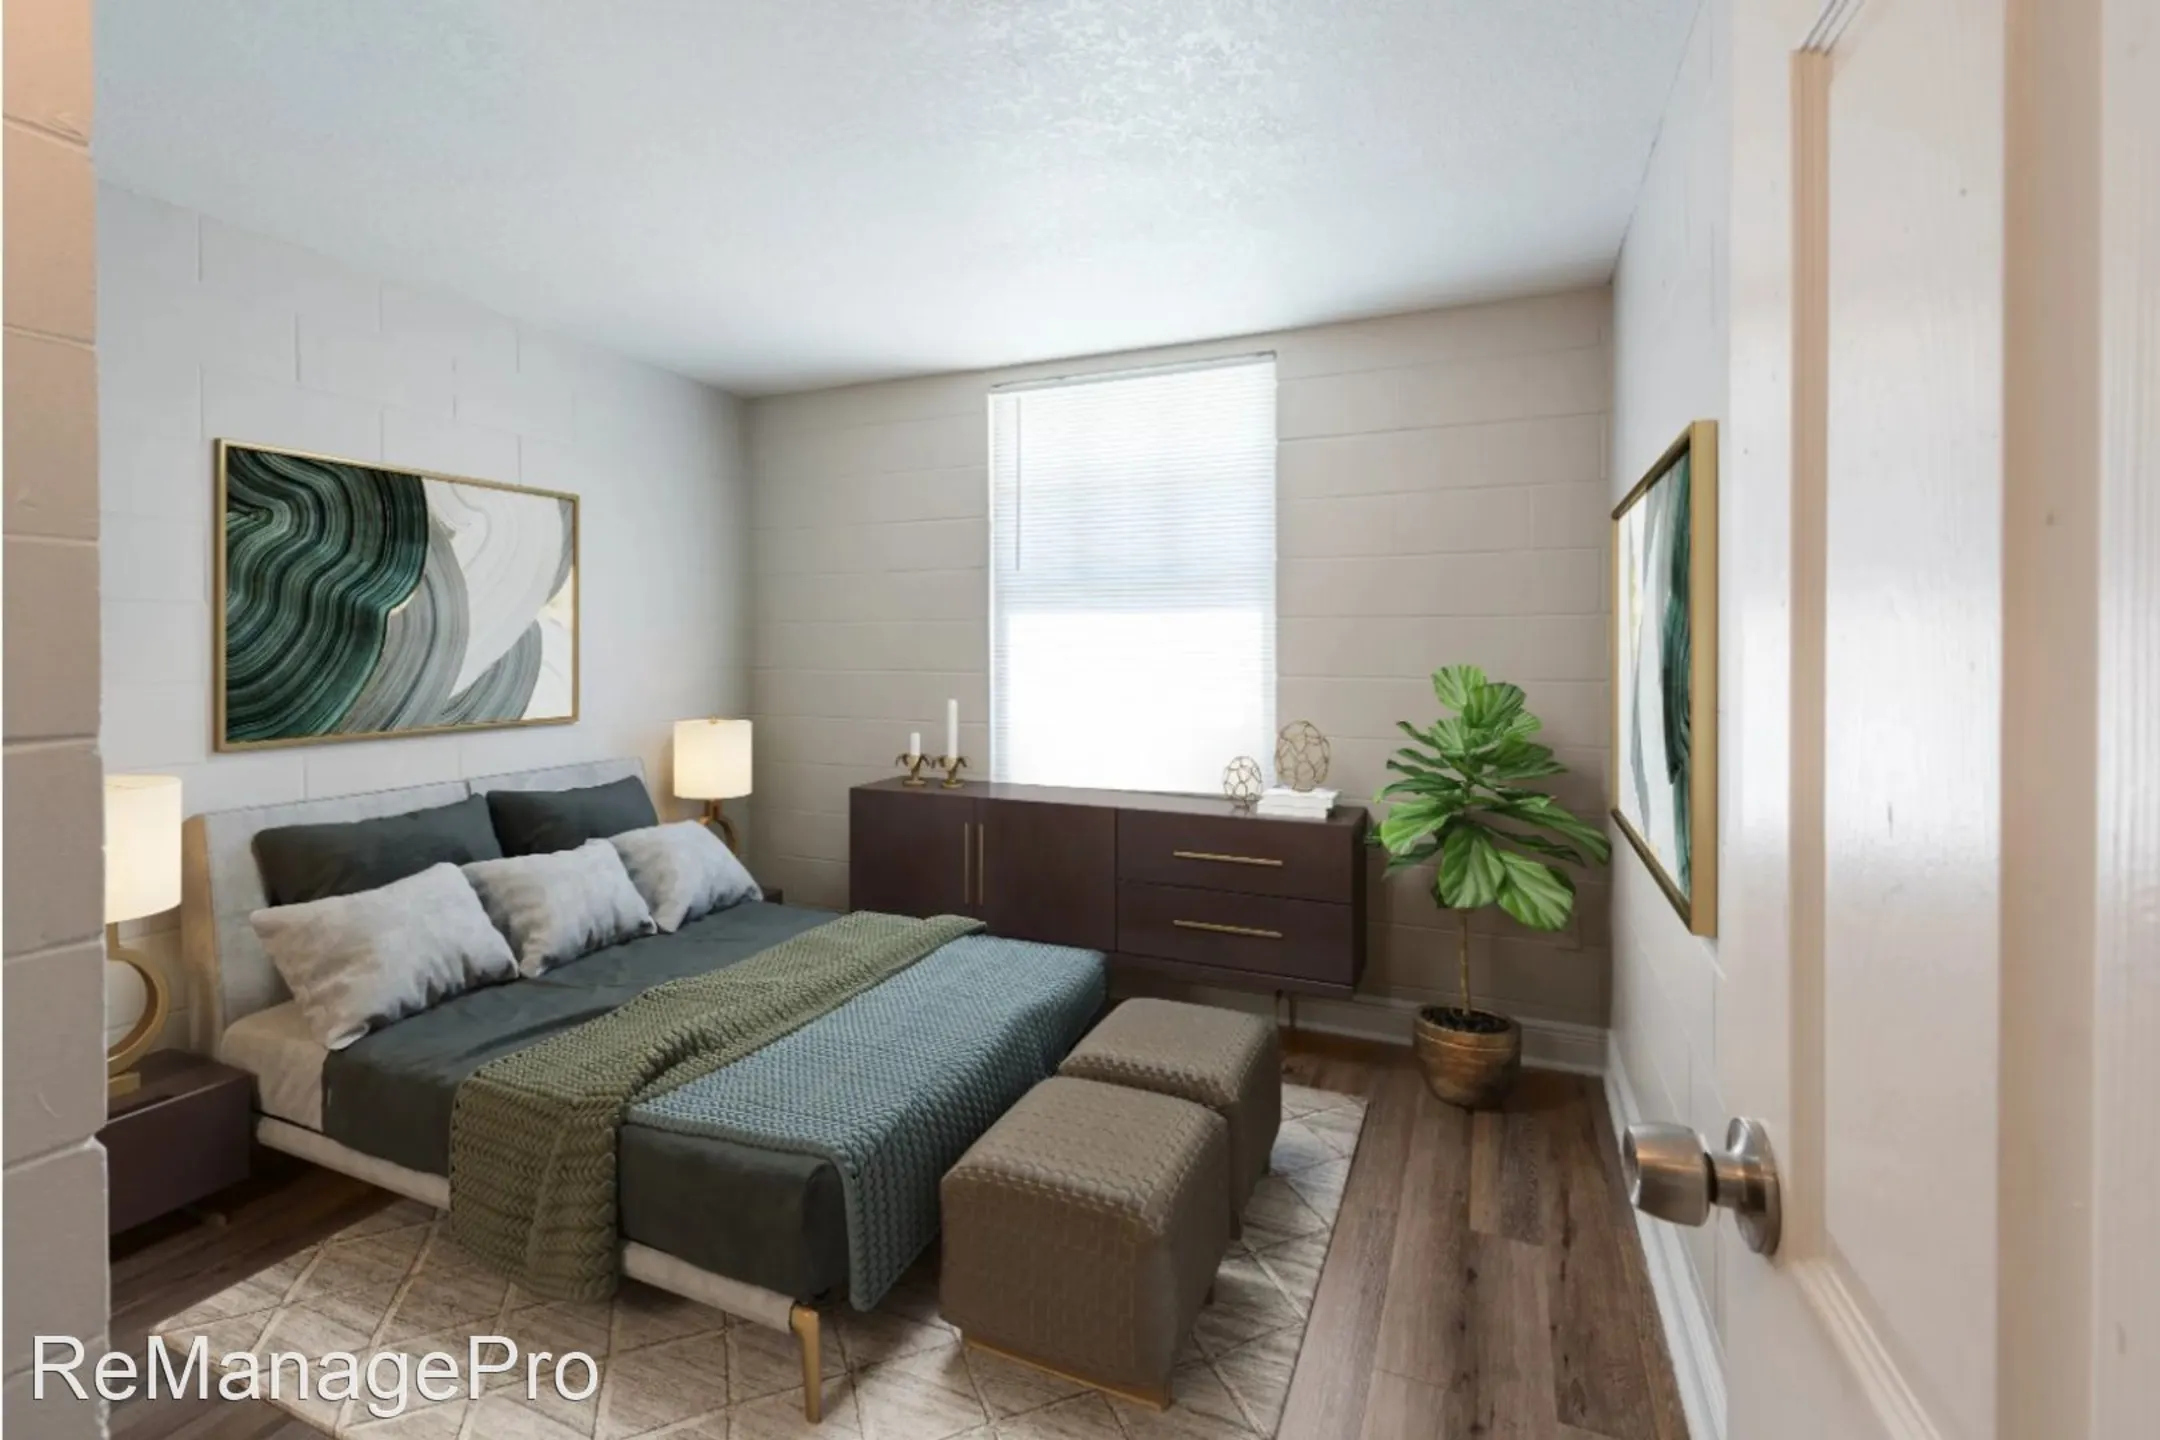 Bedroom - West River Flats - Tampa, FL